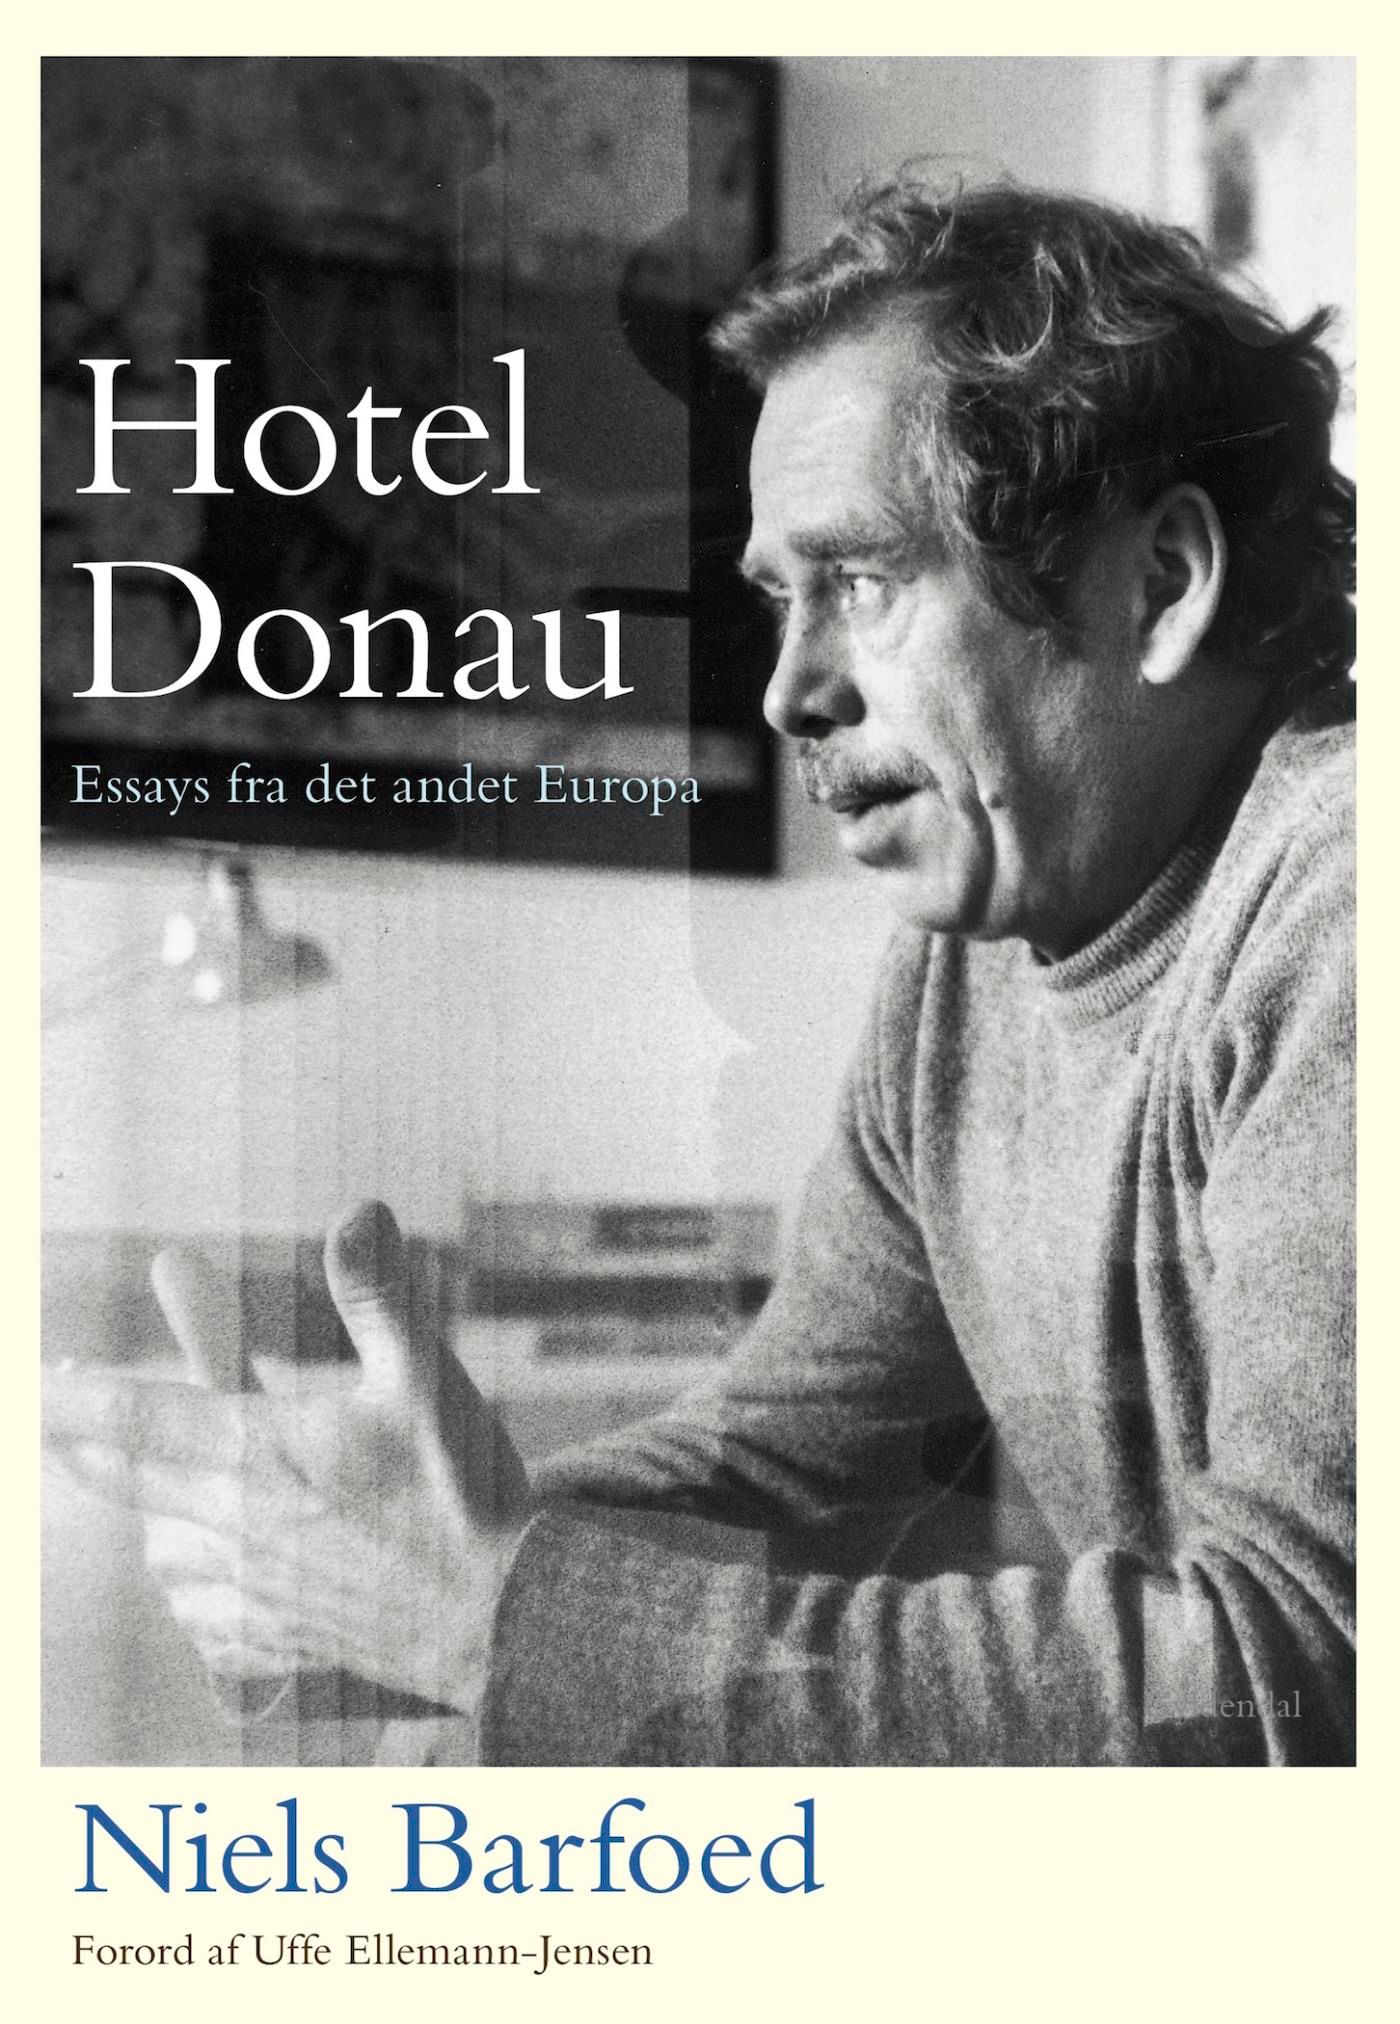 Hotel Donau, eBook by Niels Barfoed